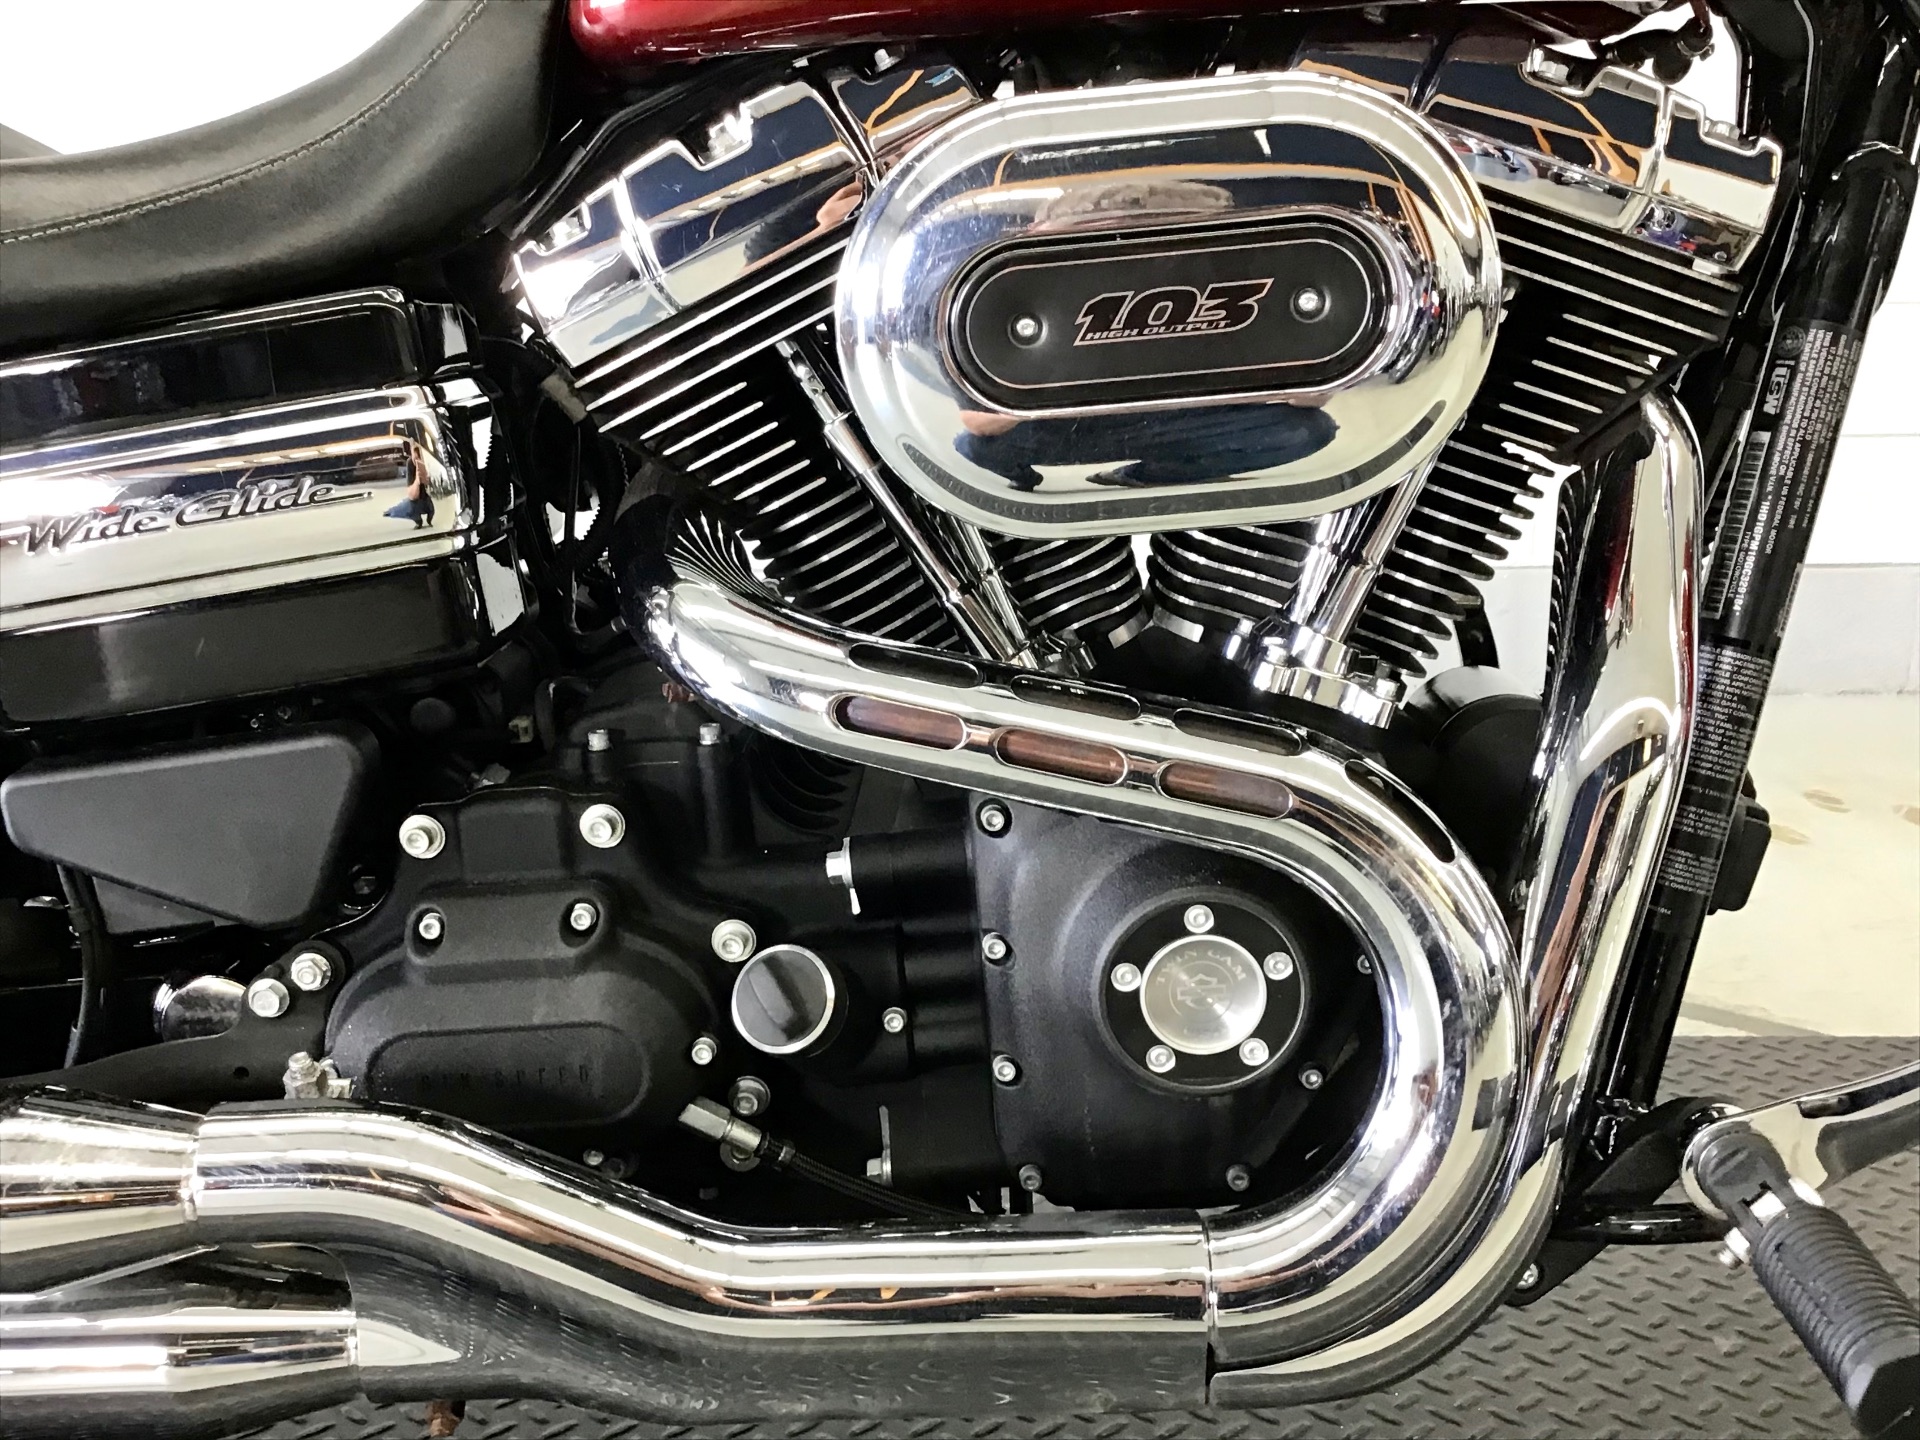 2016 Harley-Davidson Wide Glide® in Fredericksburg, Virginia - Photo 14